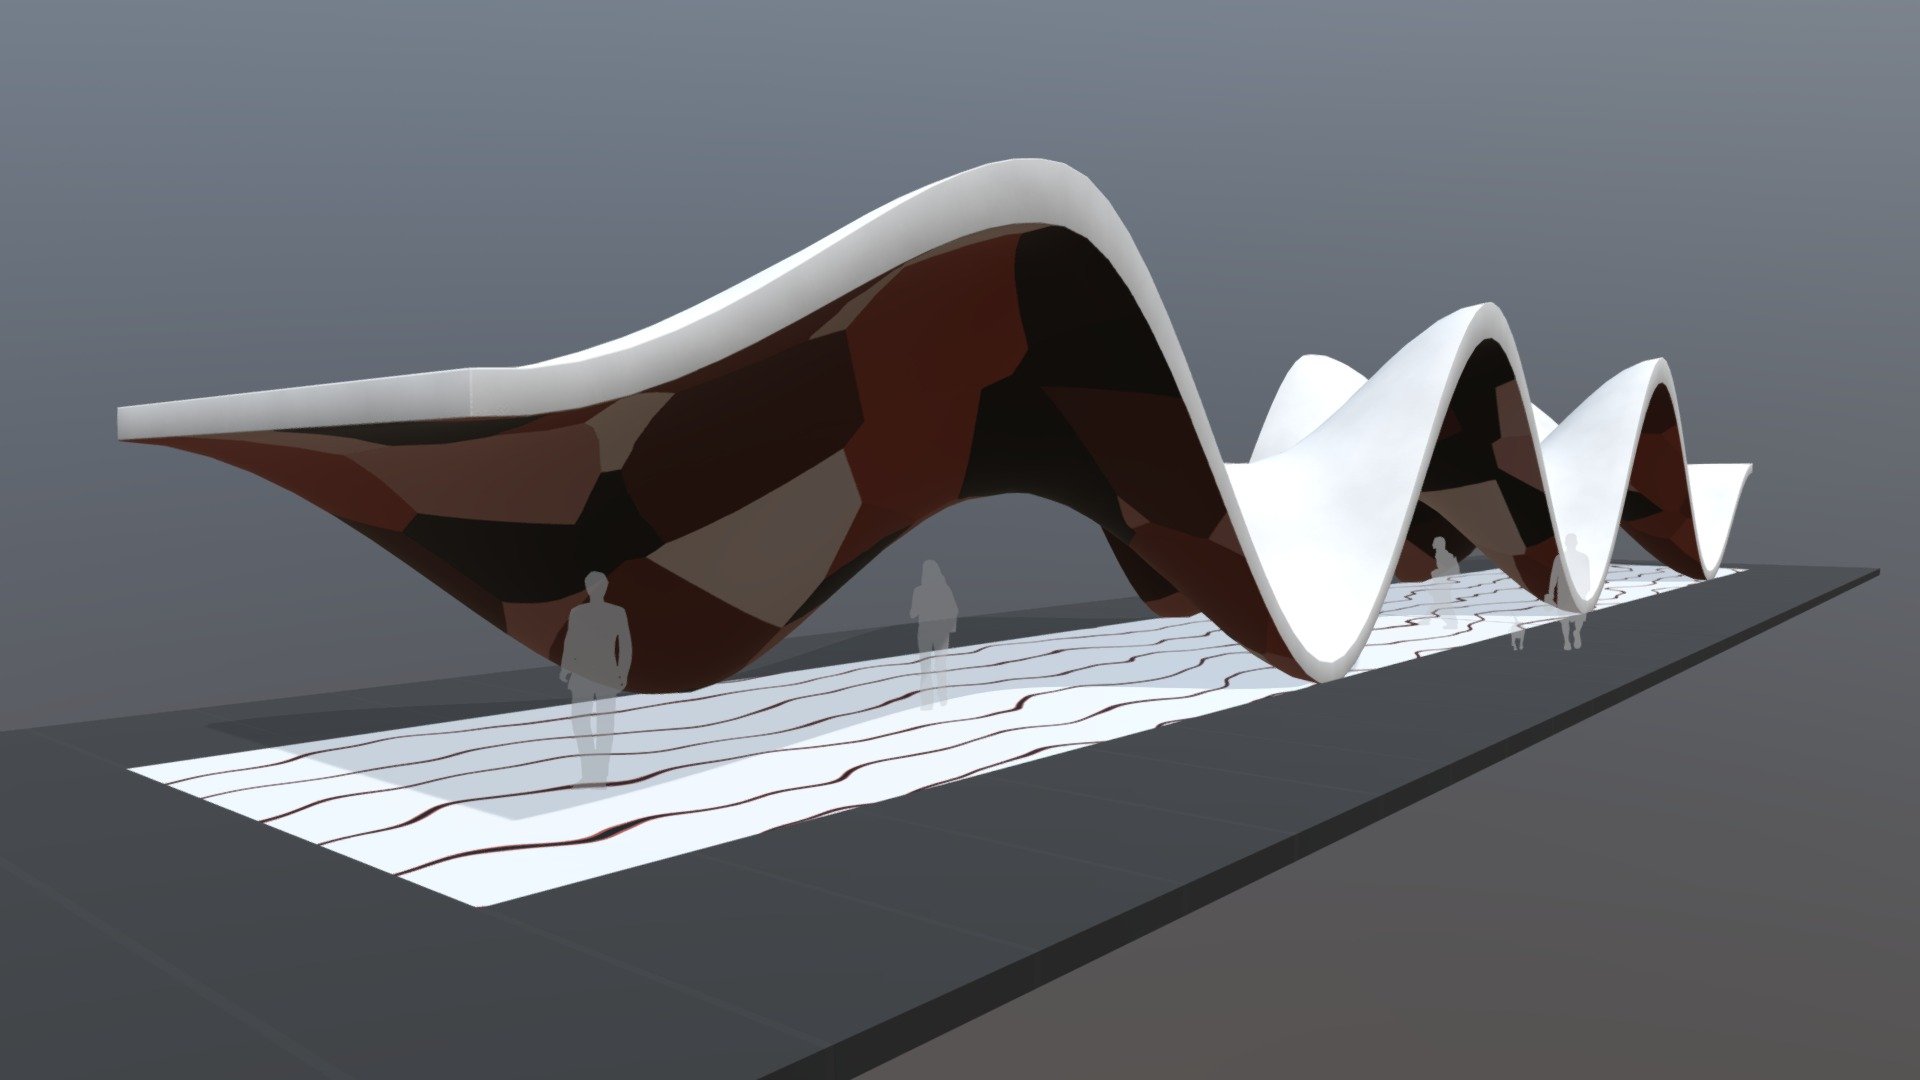 Wavy Pavilion - Wavy Pavilion - 3D model by mihais (@m1hais) 3d model